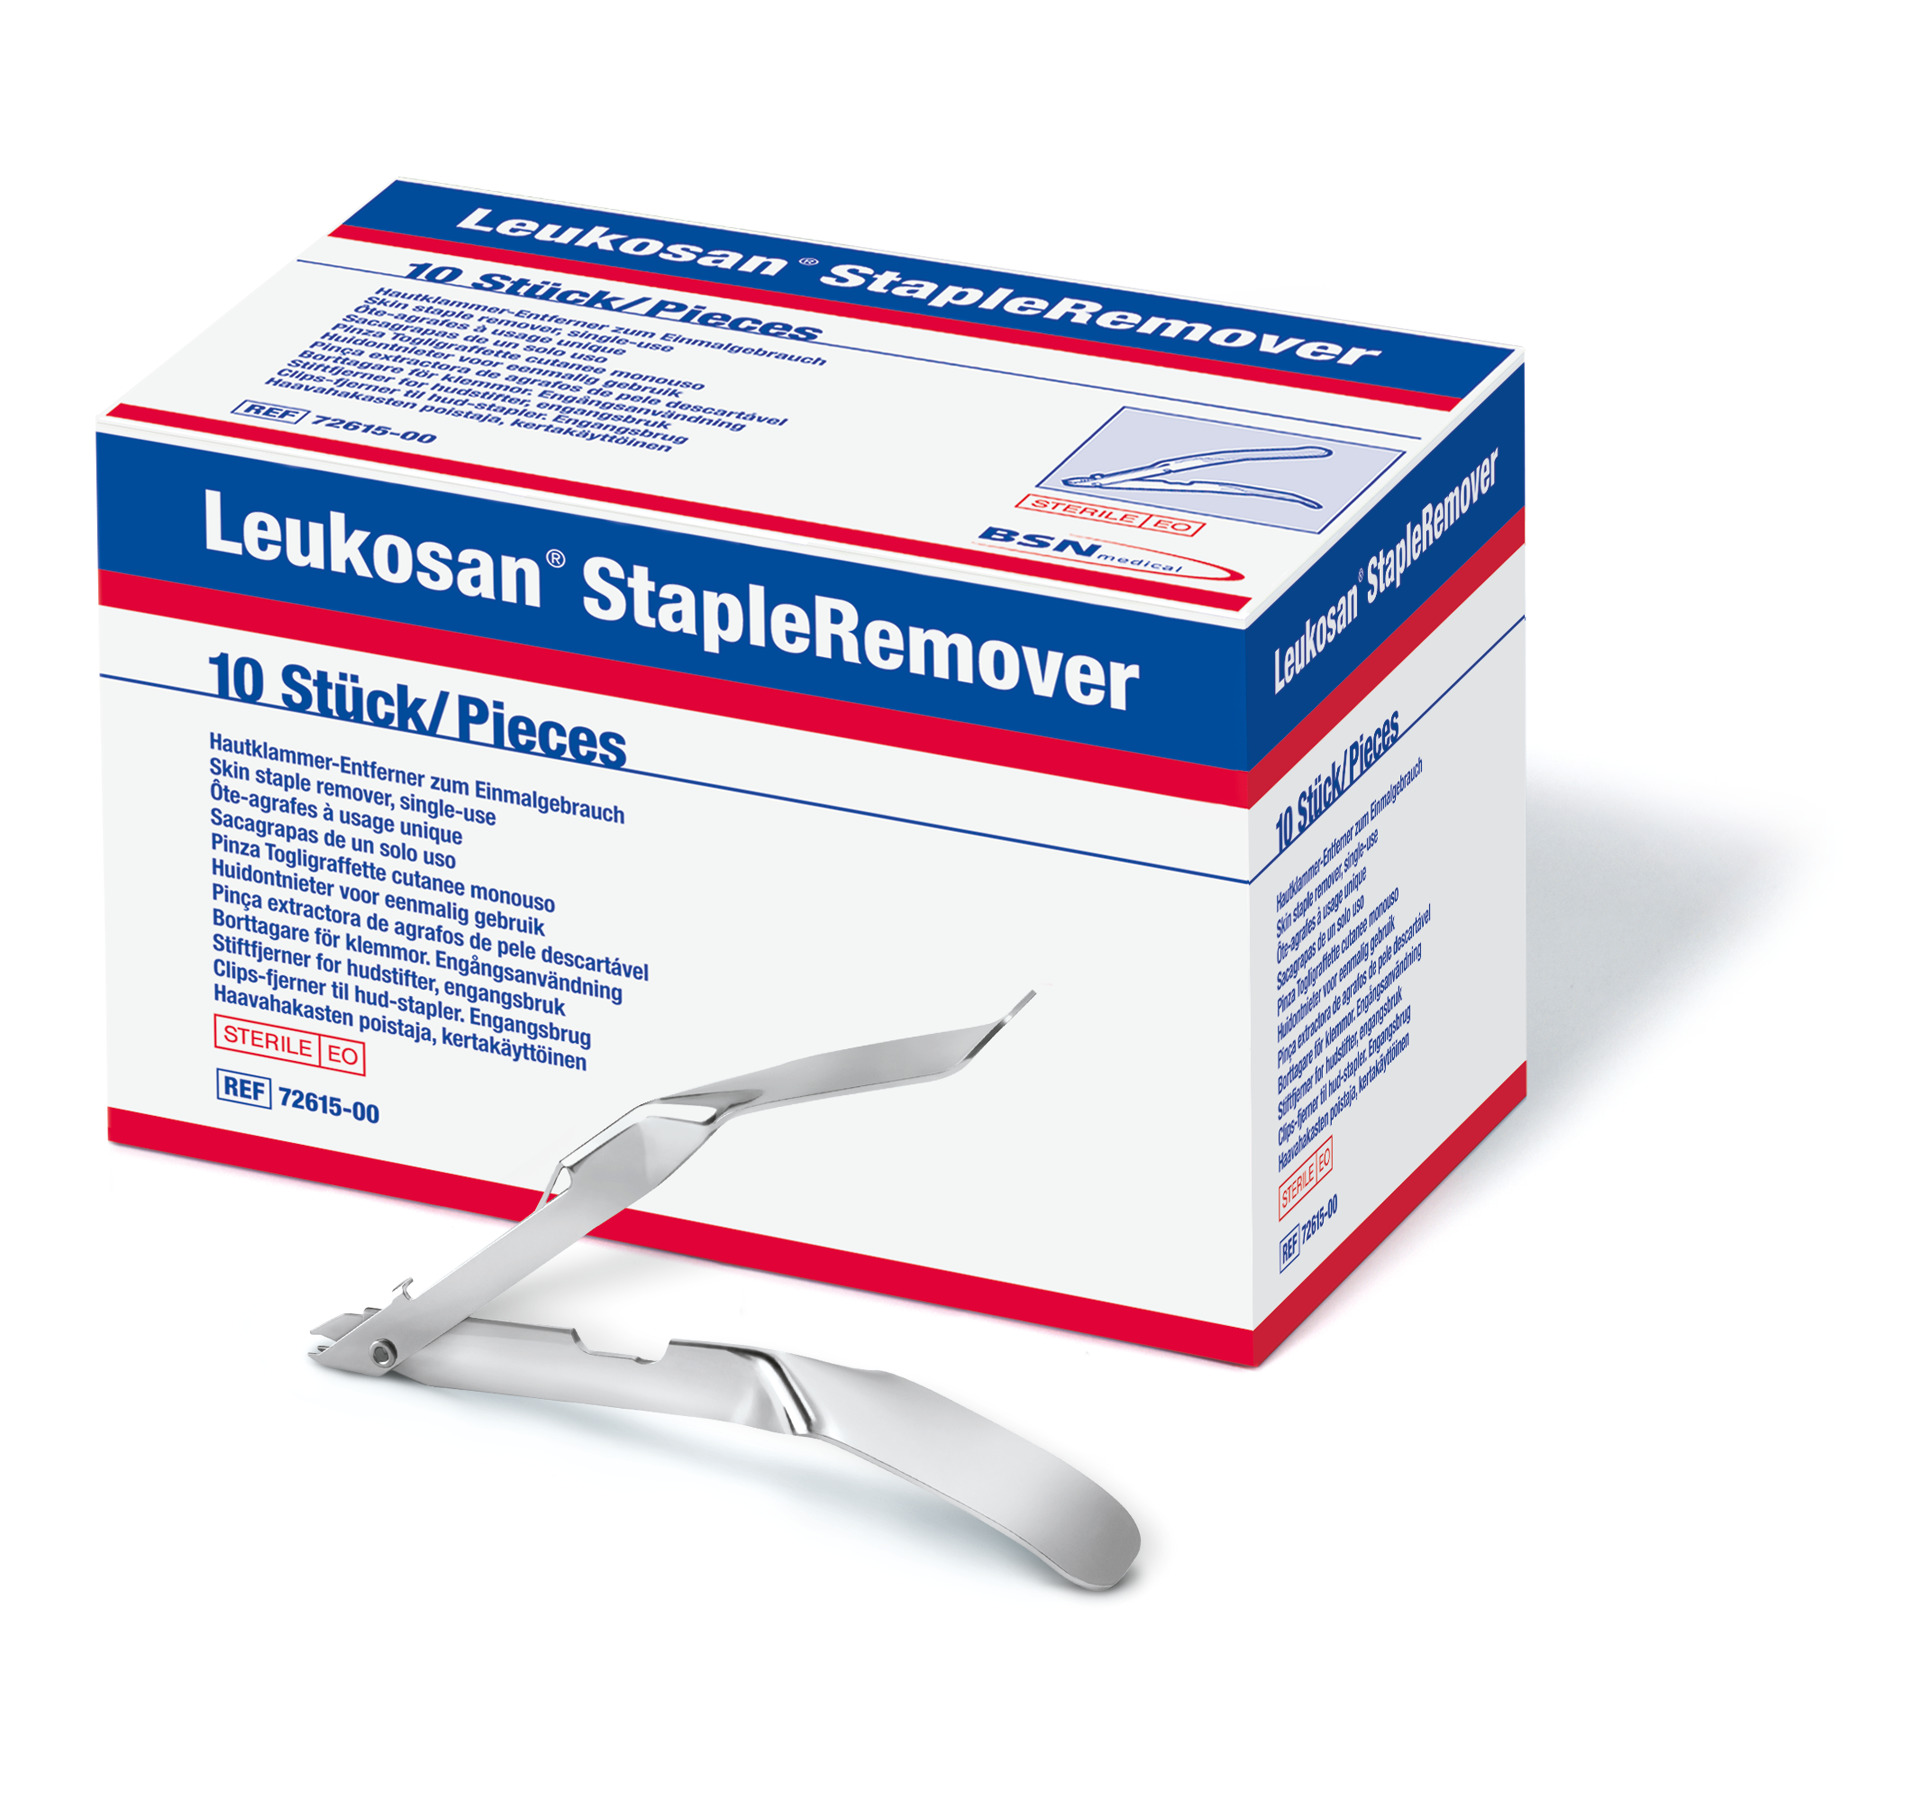 Leukosan® StapleRemover (Hautklammerentferner)